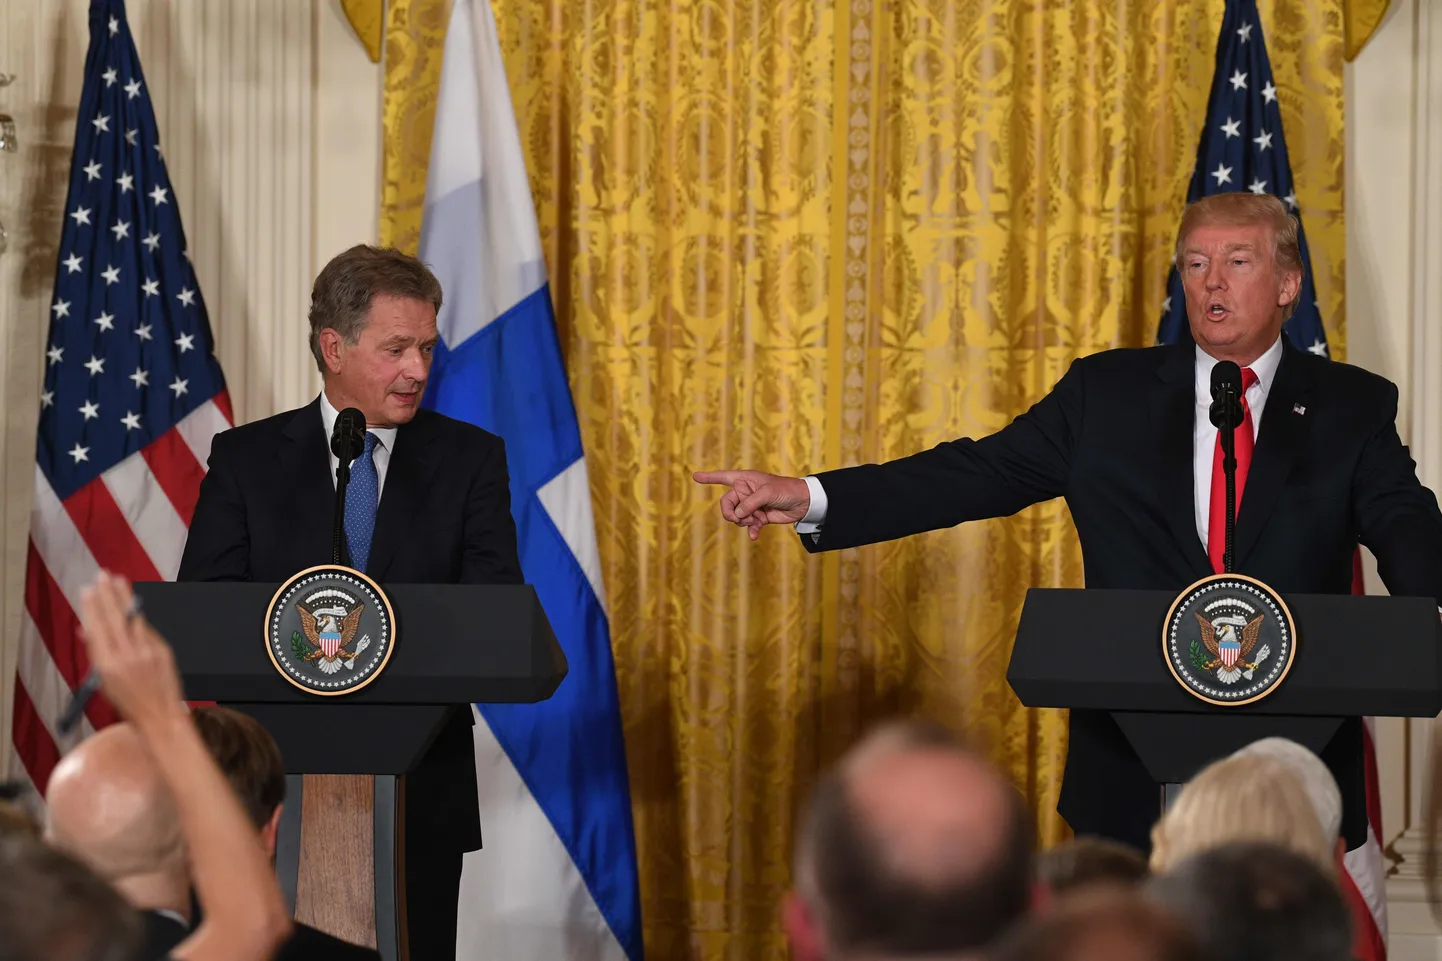 Soome president Sauli Niinistö (vasakul) ja USA president Donald Trump 2017. aastal Valges majas.